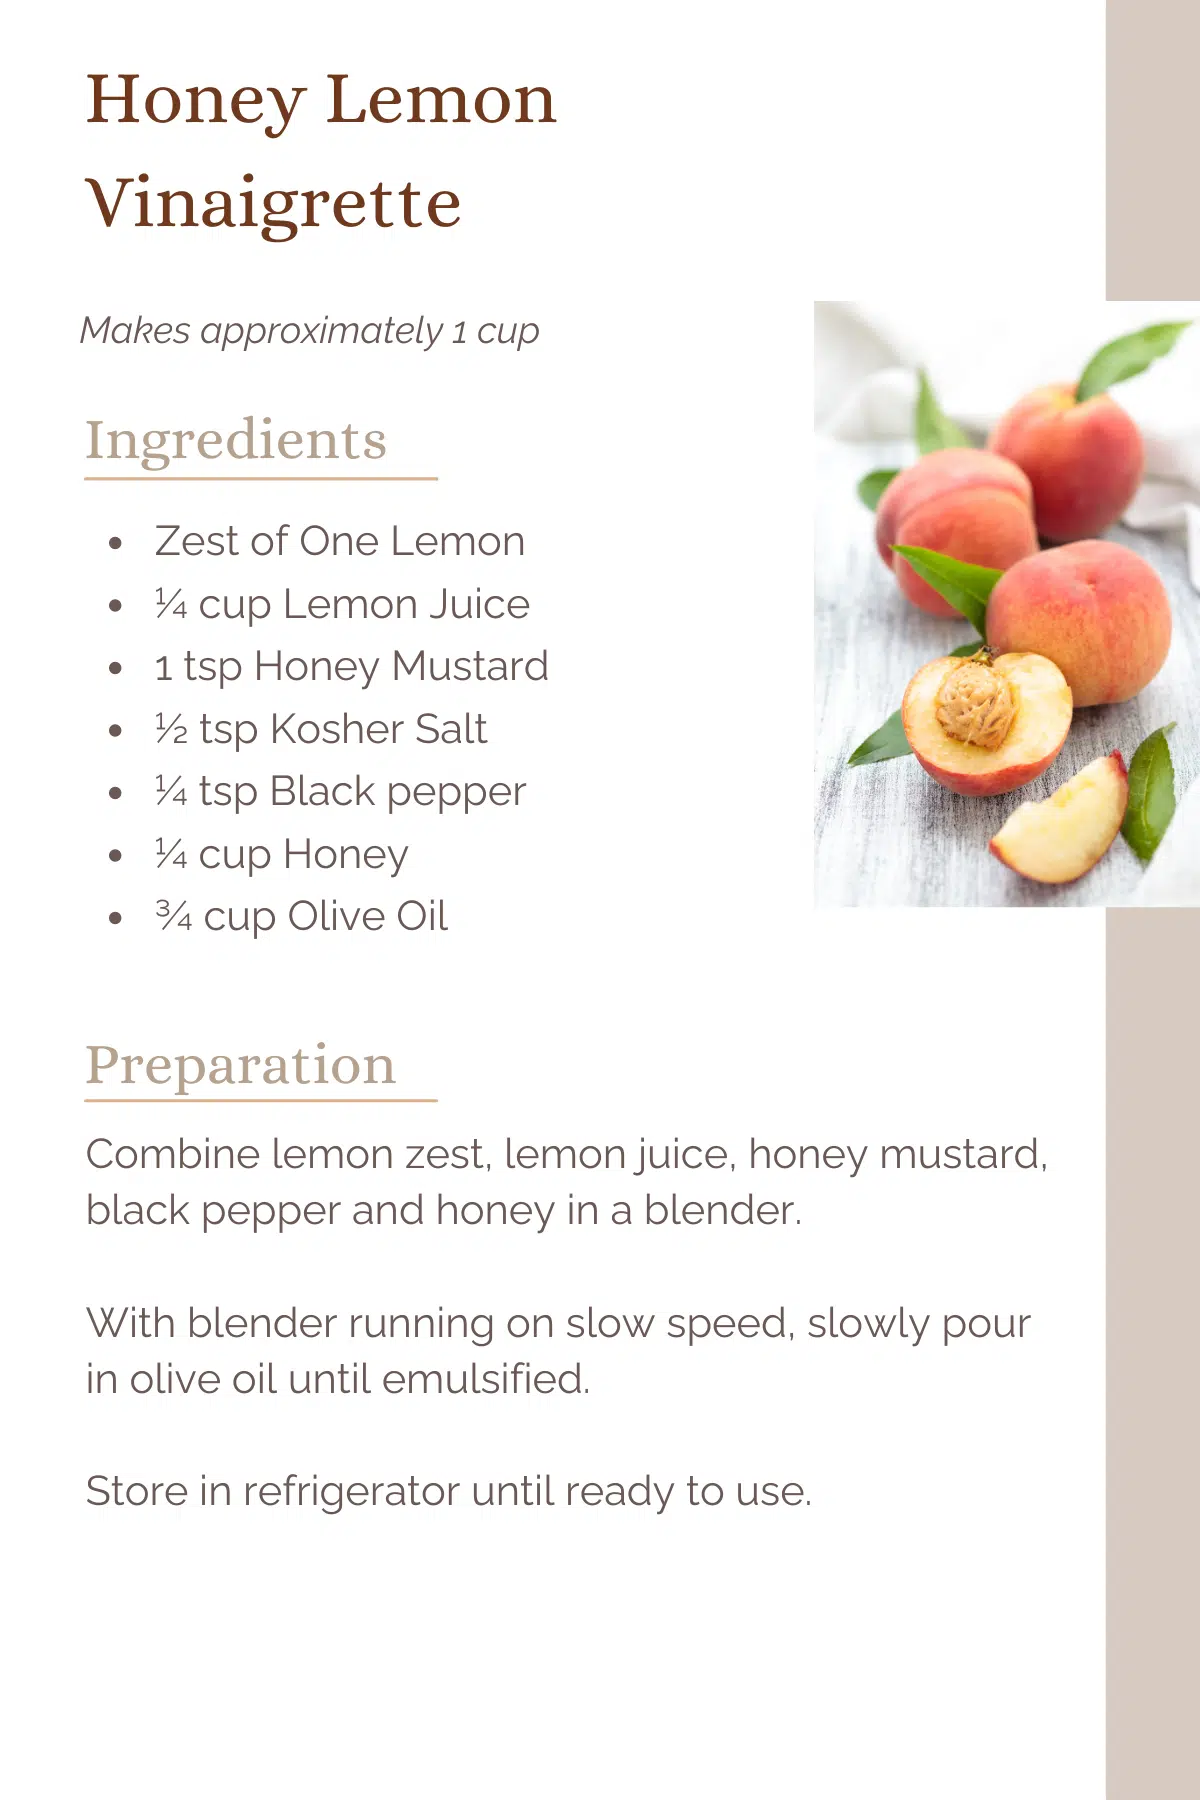 Recipe card for the Honey Lemon Vinaigrette